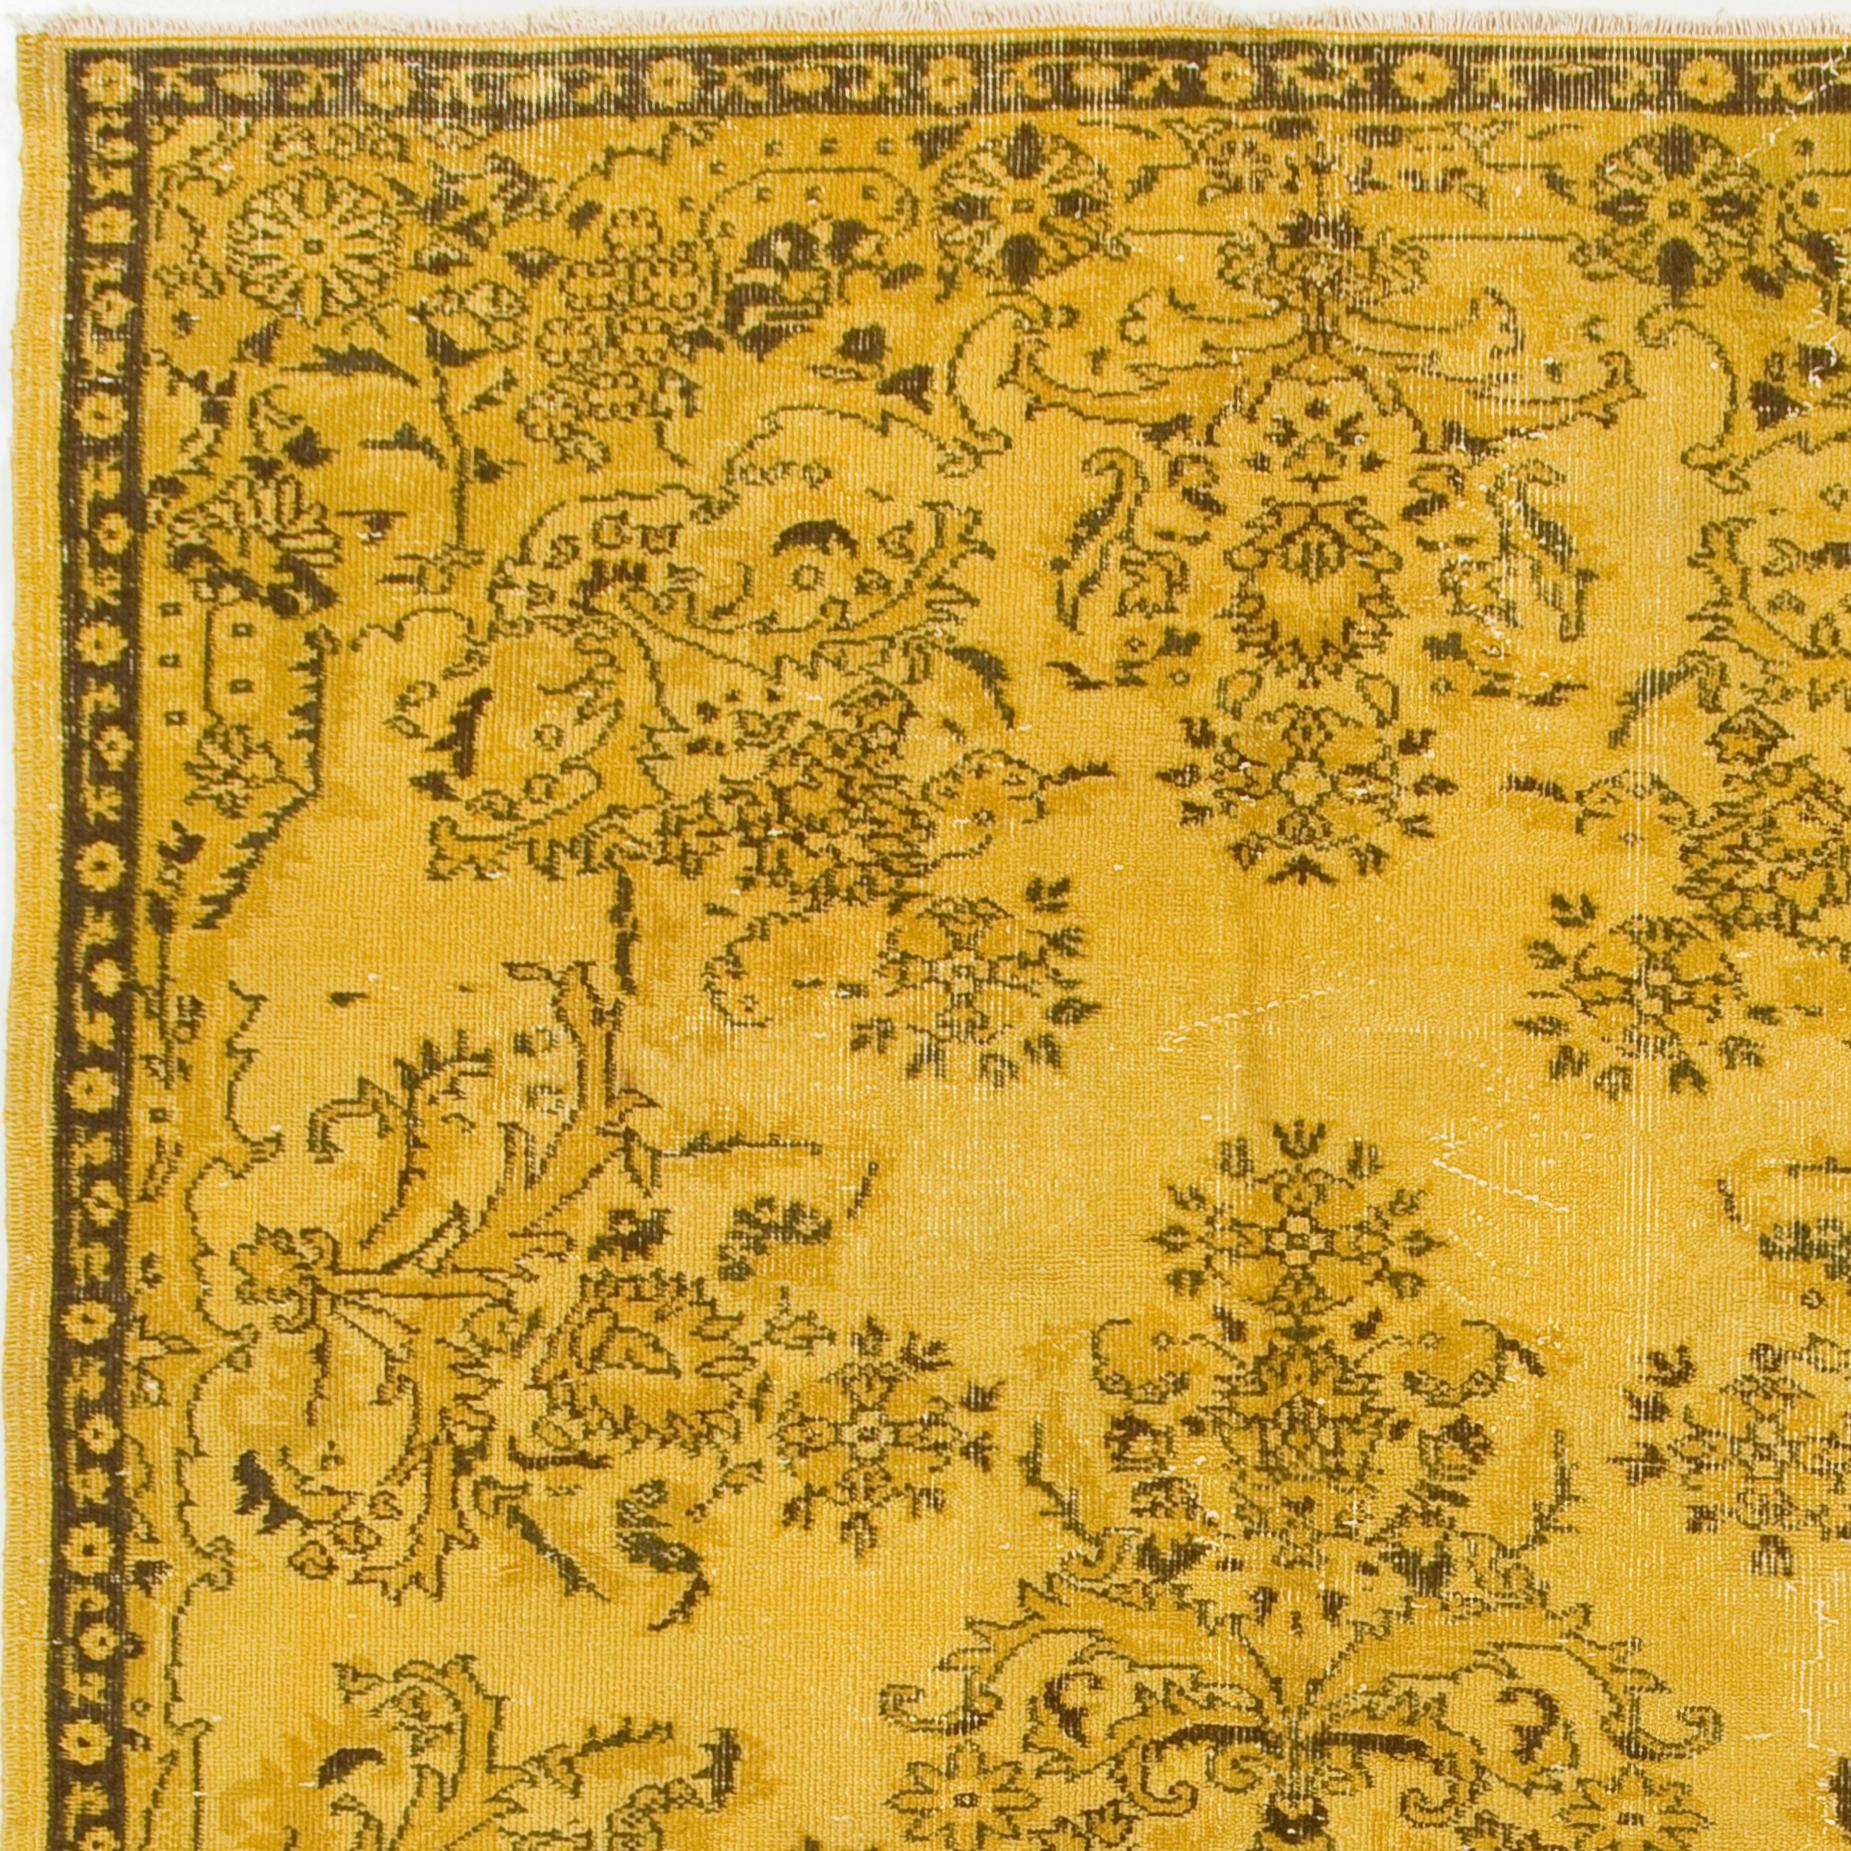 Ein türkischer Teppich im Vintage-Stil, neu gefärbt in gelber Farbe für zeitgenössische Innenräume. Größe: 6 x 8,7 ft.
Fein handgeknüpft, niedriger Wollflor auf Baumwollbasis. Professionell gewaschen.
Robust und geeignet für stark frequentierte